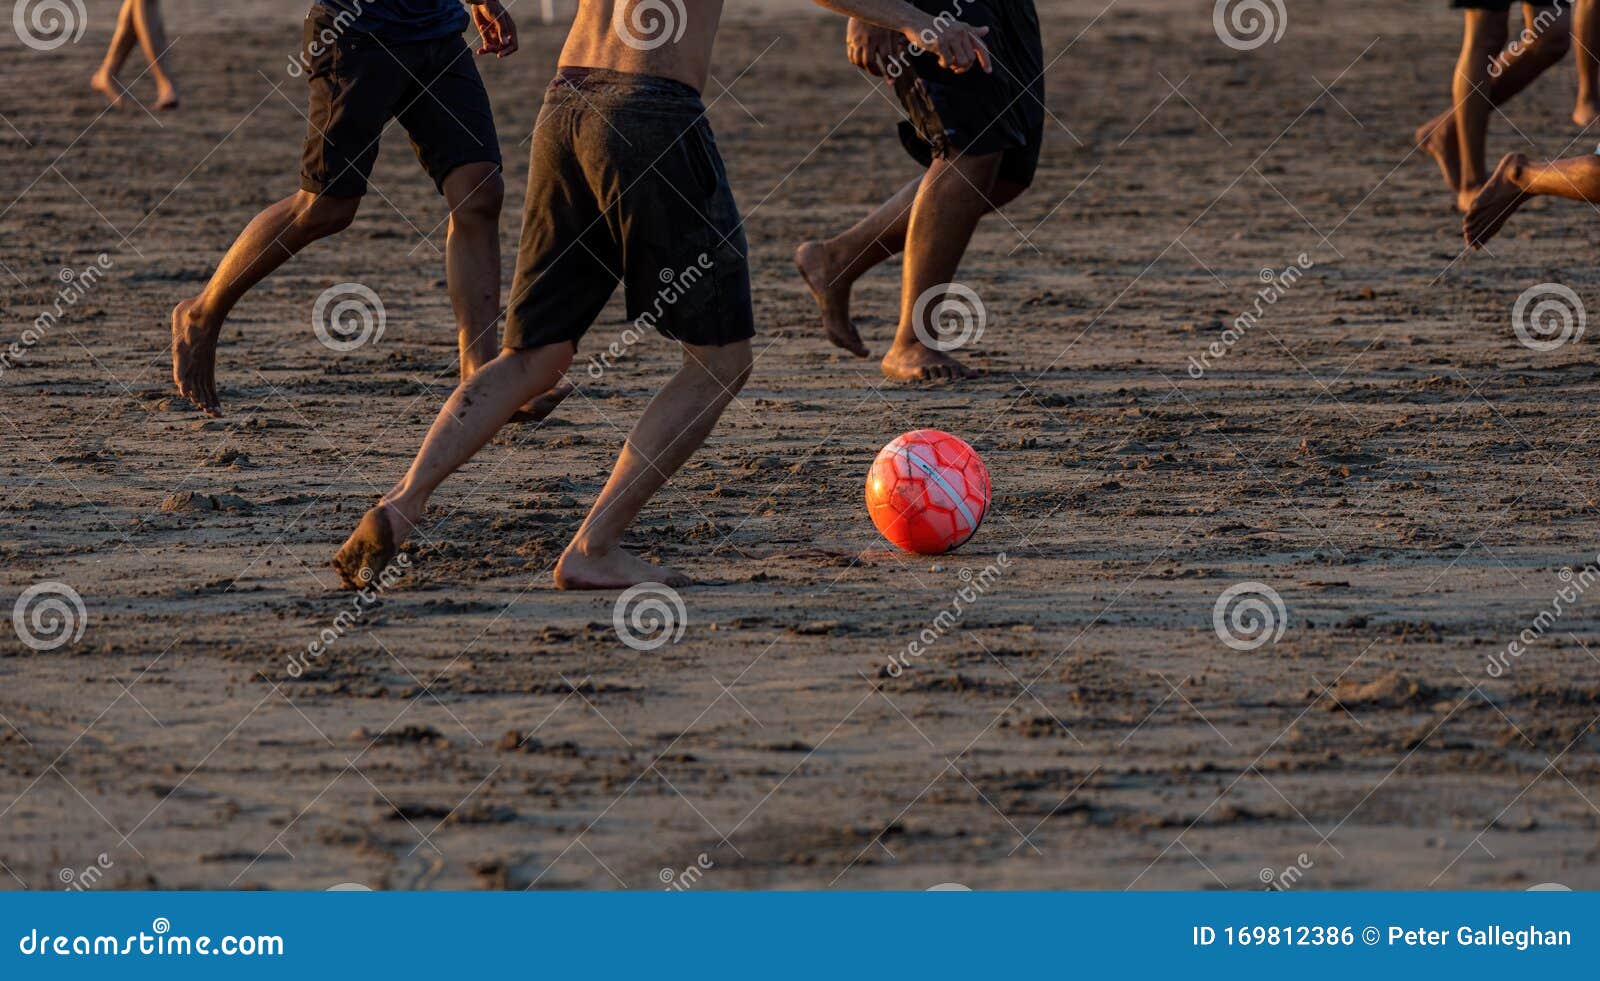 Pallone da Spiaggia Luminoso